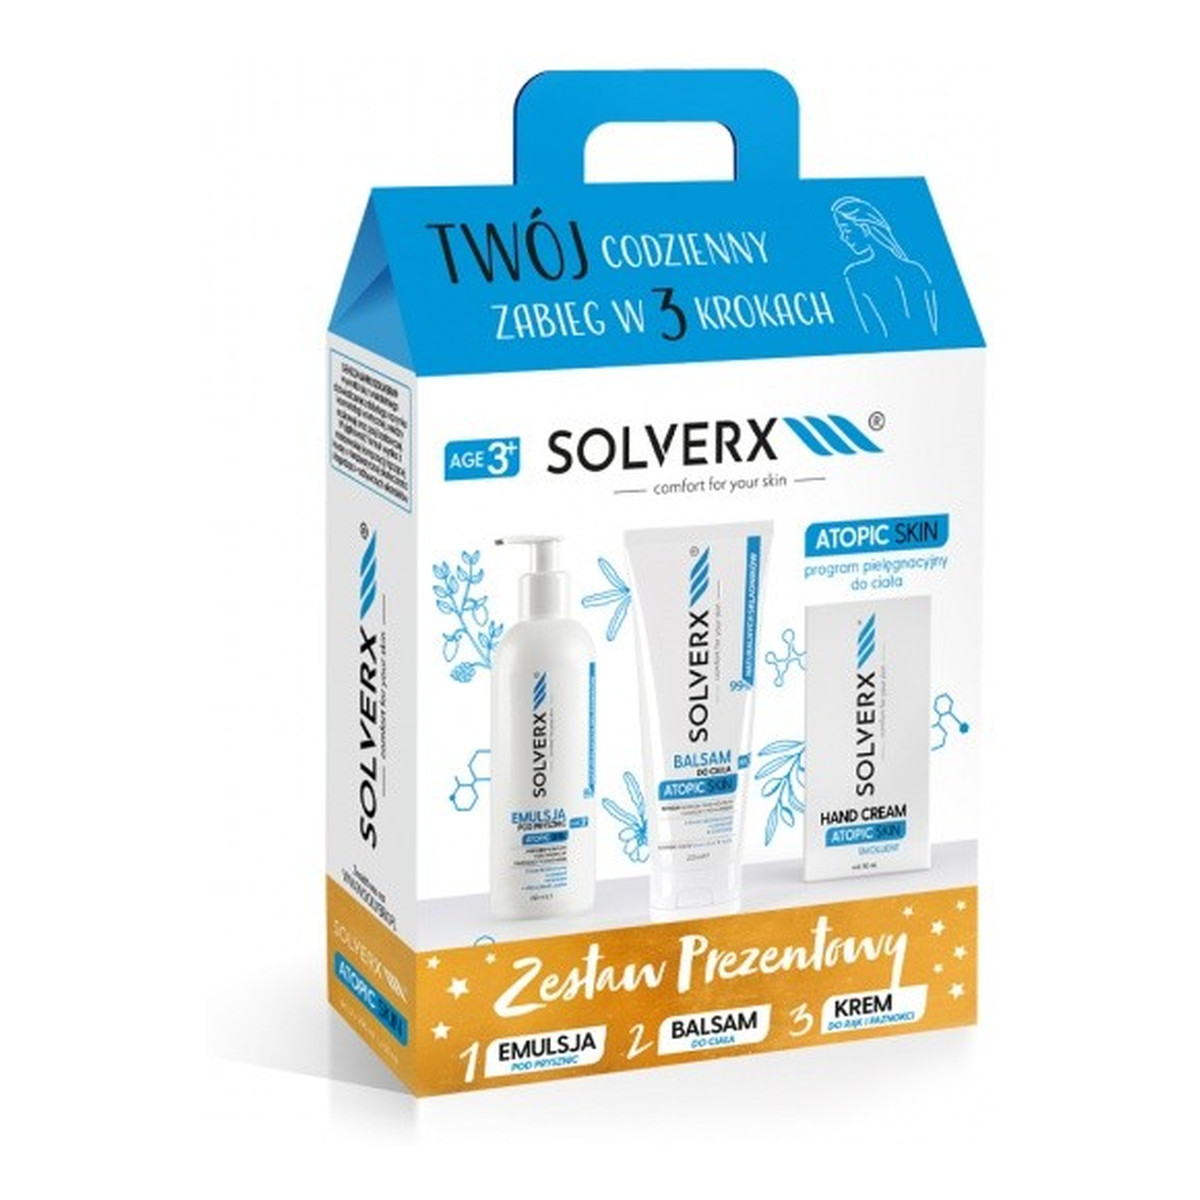 Solverx Atopic Skin Zestaw prezentowy (balsam do ciała + krem do rąk +emulsja pod prysznic ) 250ml